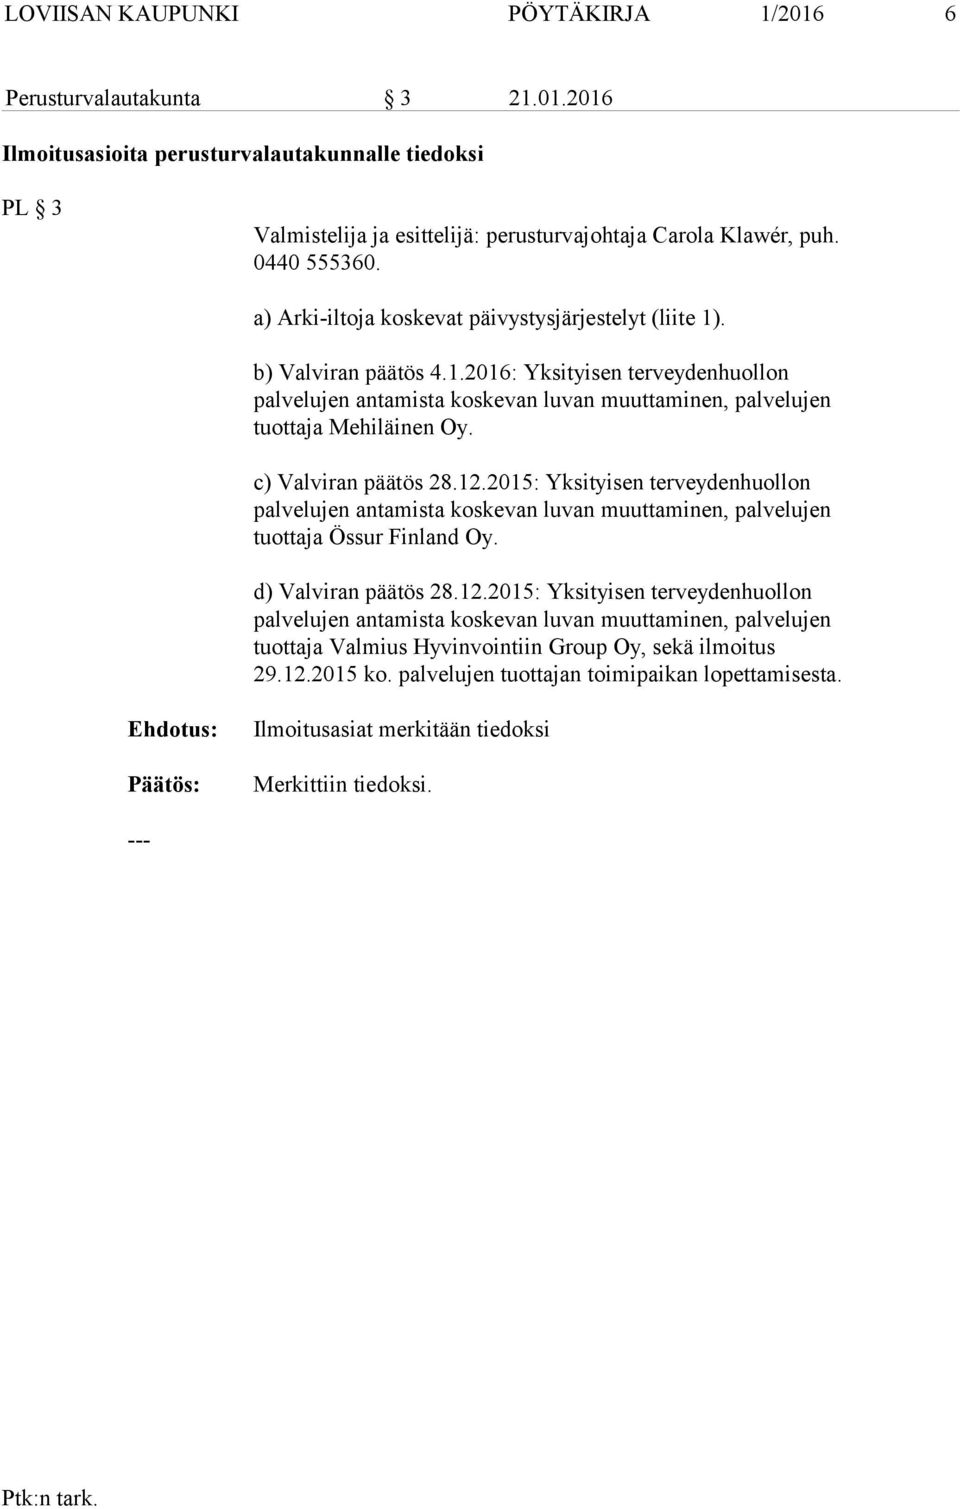 c) Valviran päätös 28.12.2015: Yksityisen terveydenhuollon palvelujen antamista koskevan luvan muuttaminen, palvelujen tuottaja Össur Finland Oy. d) Valviran päätös 28.12.2015: Yksityisen terveydenhuollon palvelujen antamista koskevan luvan muuttaminen, palvelujen tuottaja Valmius Hyvinvointiin Group Oy, sekä ilmoitus 29.